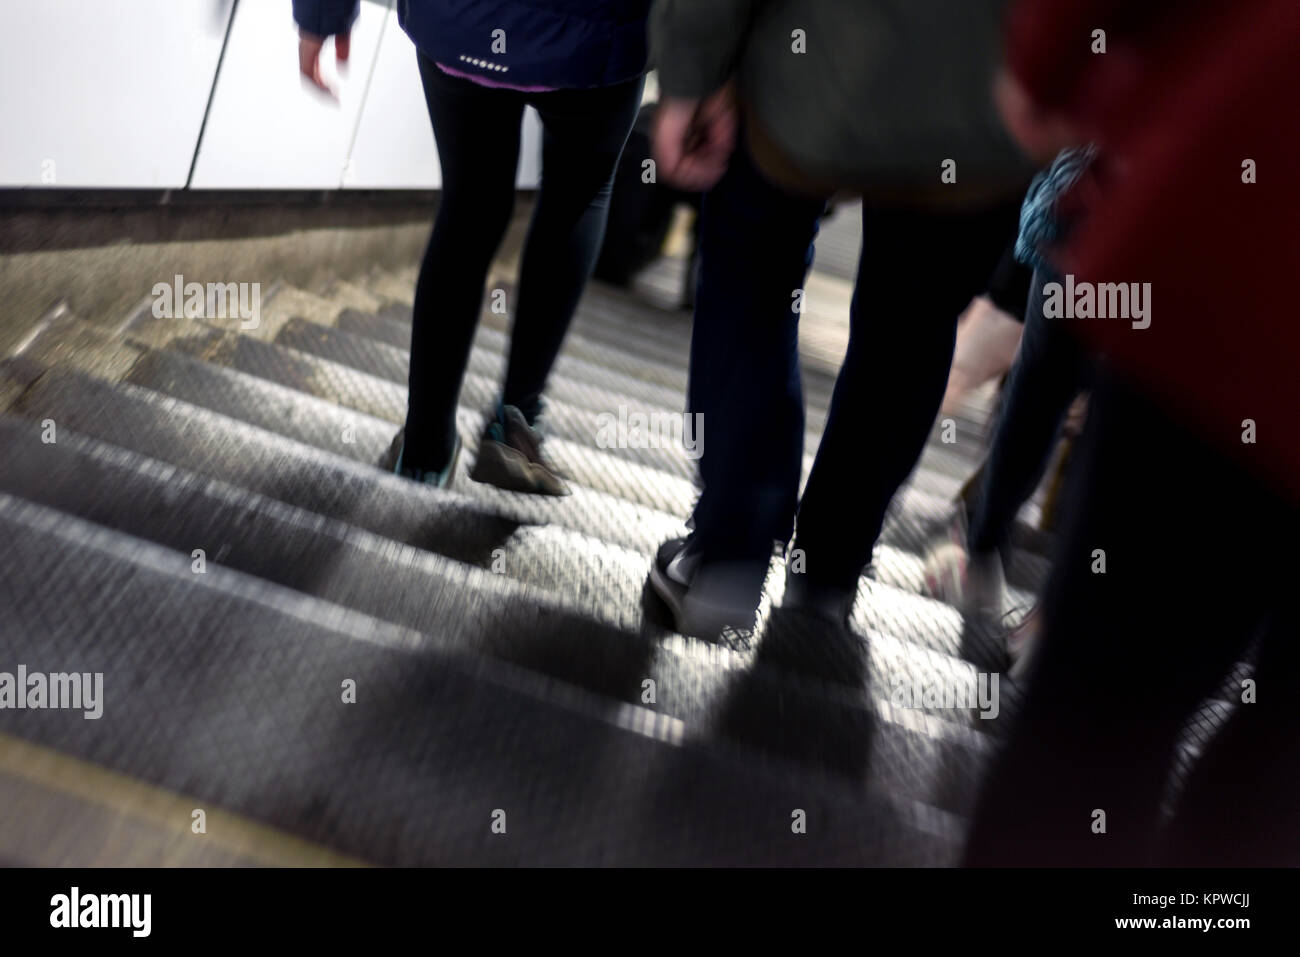 Motion blur flou intentionnel de personnes utilisant des trains du métro de Londres que le tube pour le transport public Banque D'Images